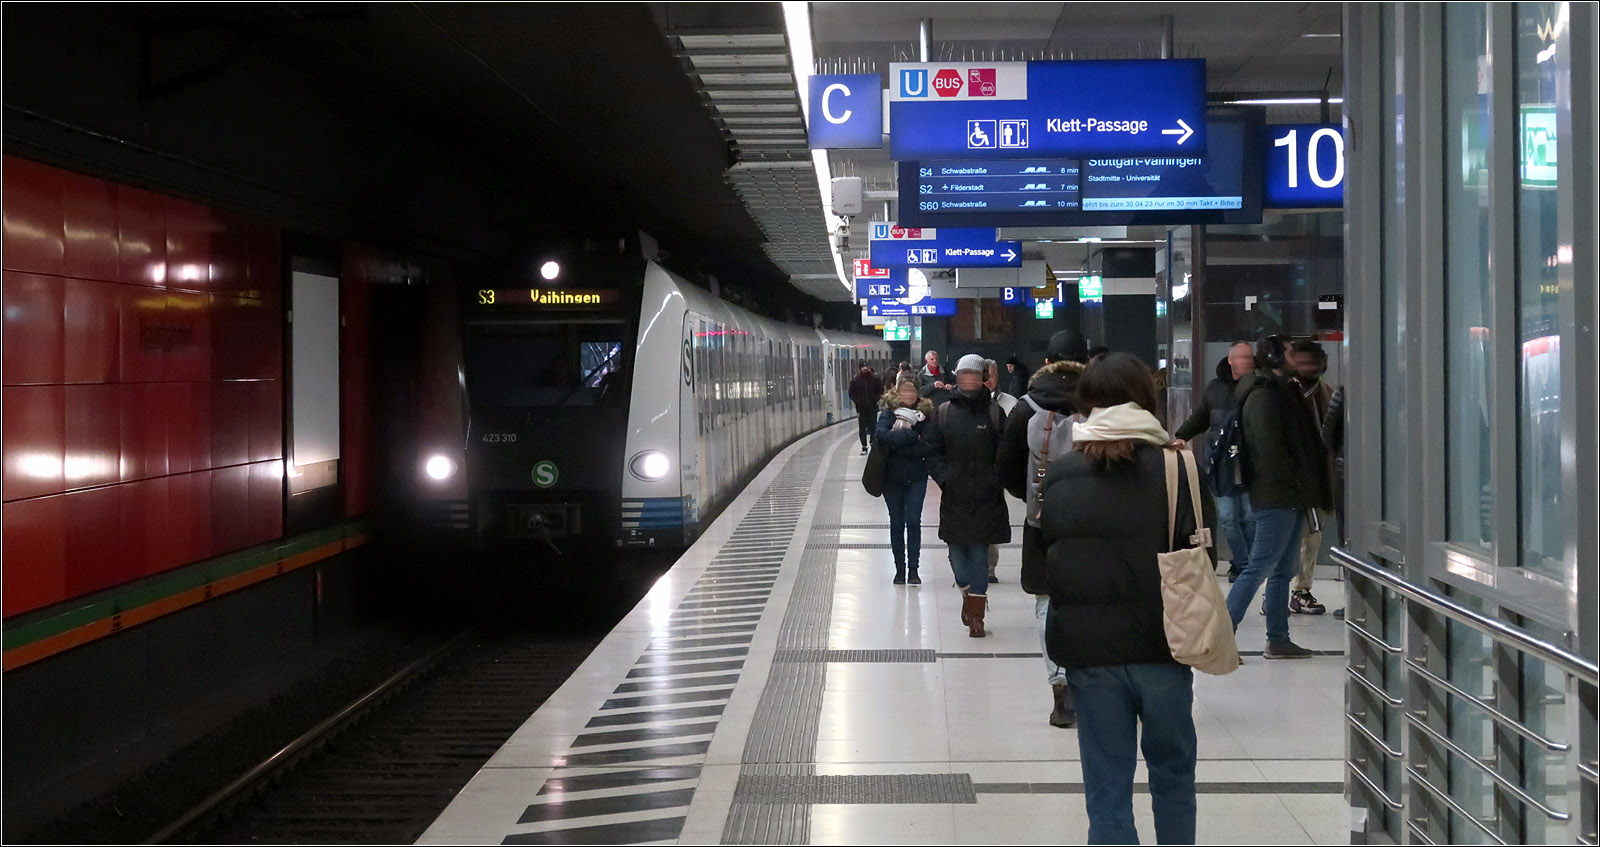 Aktuelle Einschränkungen auf der Stuttgarter S-Bahnline S3 und S62 - 

Da die neuen S-Bahnen der Baureiche 430 mit den älteren Zügen derselben Baureihe nicht gekuppelt werden können, andere Züge dieser Baureihe noch in Reparatur sind (nach Problemen mit den Radreifen beim Umleitungsverkehr über die Panoramabahn letzten Sommer) und weitere auf ETCS umgerüstet werden, gibt es Einschränkungen auf der Linie S3 und die Expresslinie S62 fährt überhaupt nicht.
Die S3 wird deshalb derzeit mit Fahrzeugen der Baureihe 423 betrieben, die von der dafür momentan eingestellten S62 Weil der Stadt - Zuffenhausen abgezogen wurden. Es reicht aber aktuell nur für einen 30 Min-Takt auf der sonst im 15 Min-Takt bedienten Linie.

Hier erreicht ein Zug der Linie S3 nach Vaihingen den Bahnhof Hauptbahnhof (tief).

09.02.2023 (M)